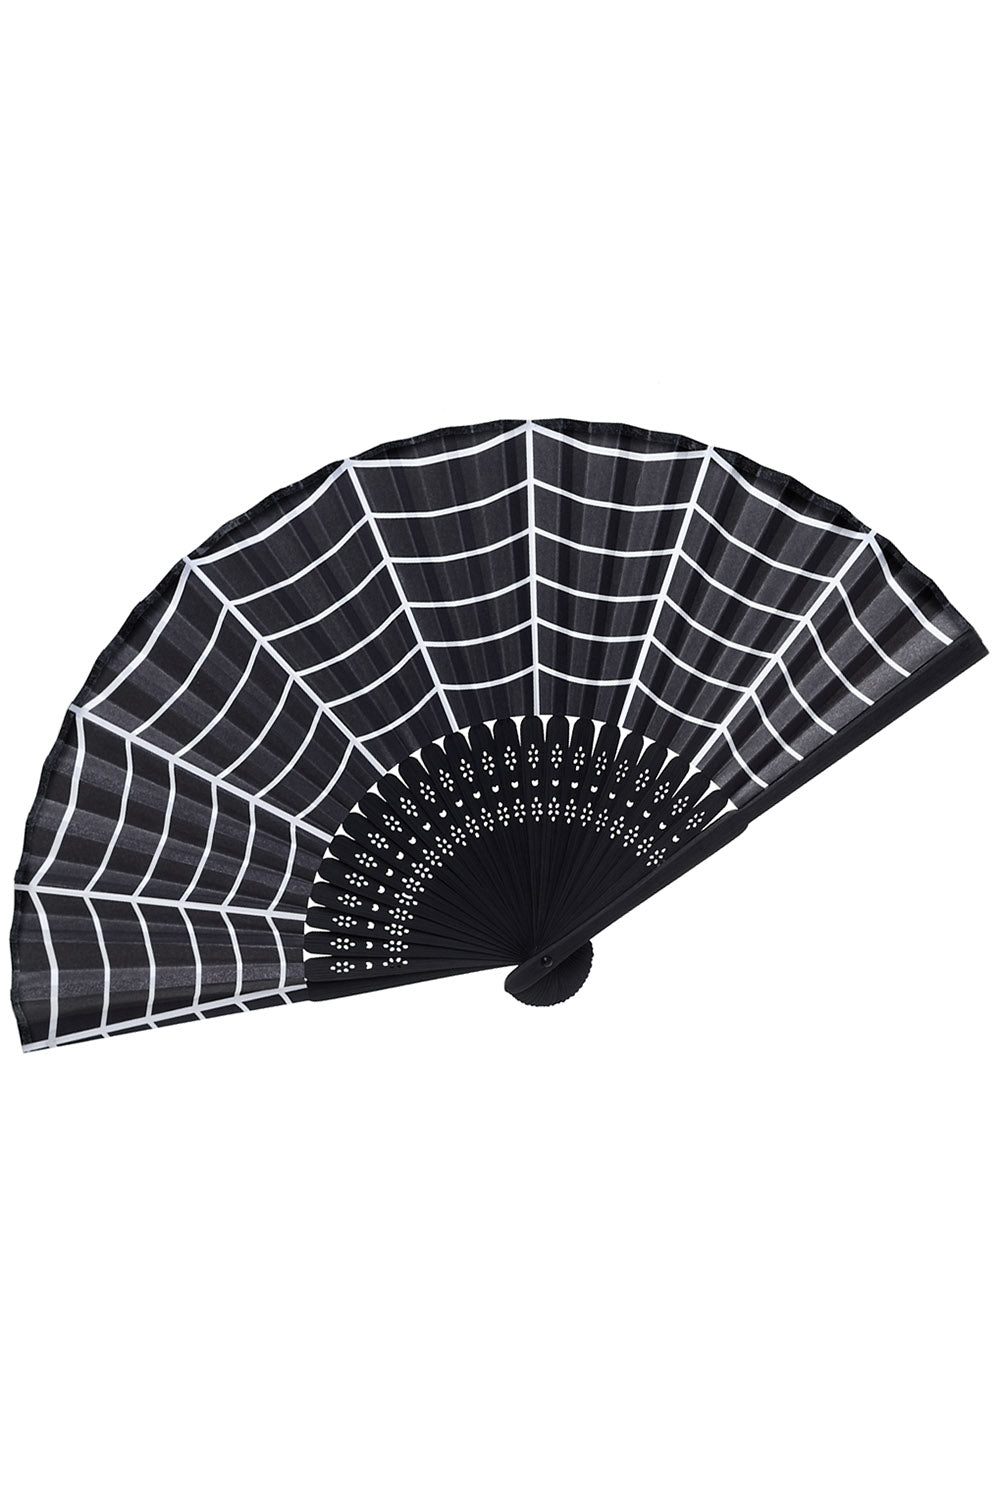 Spiderweb Fan